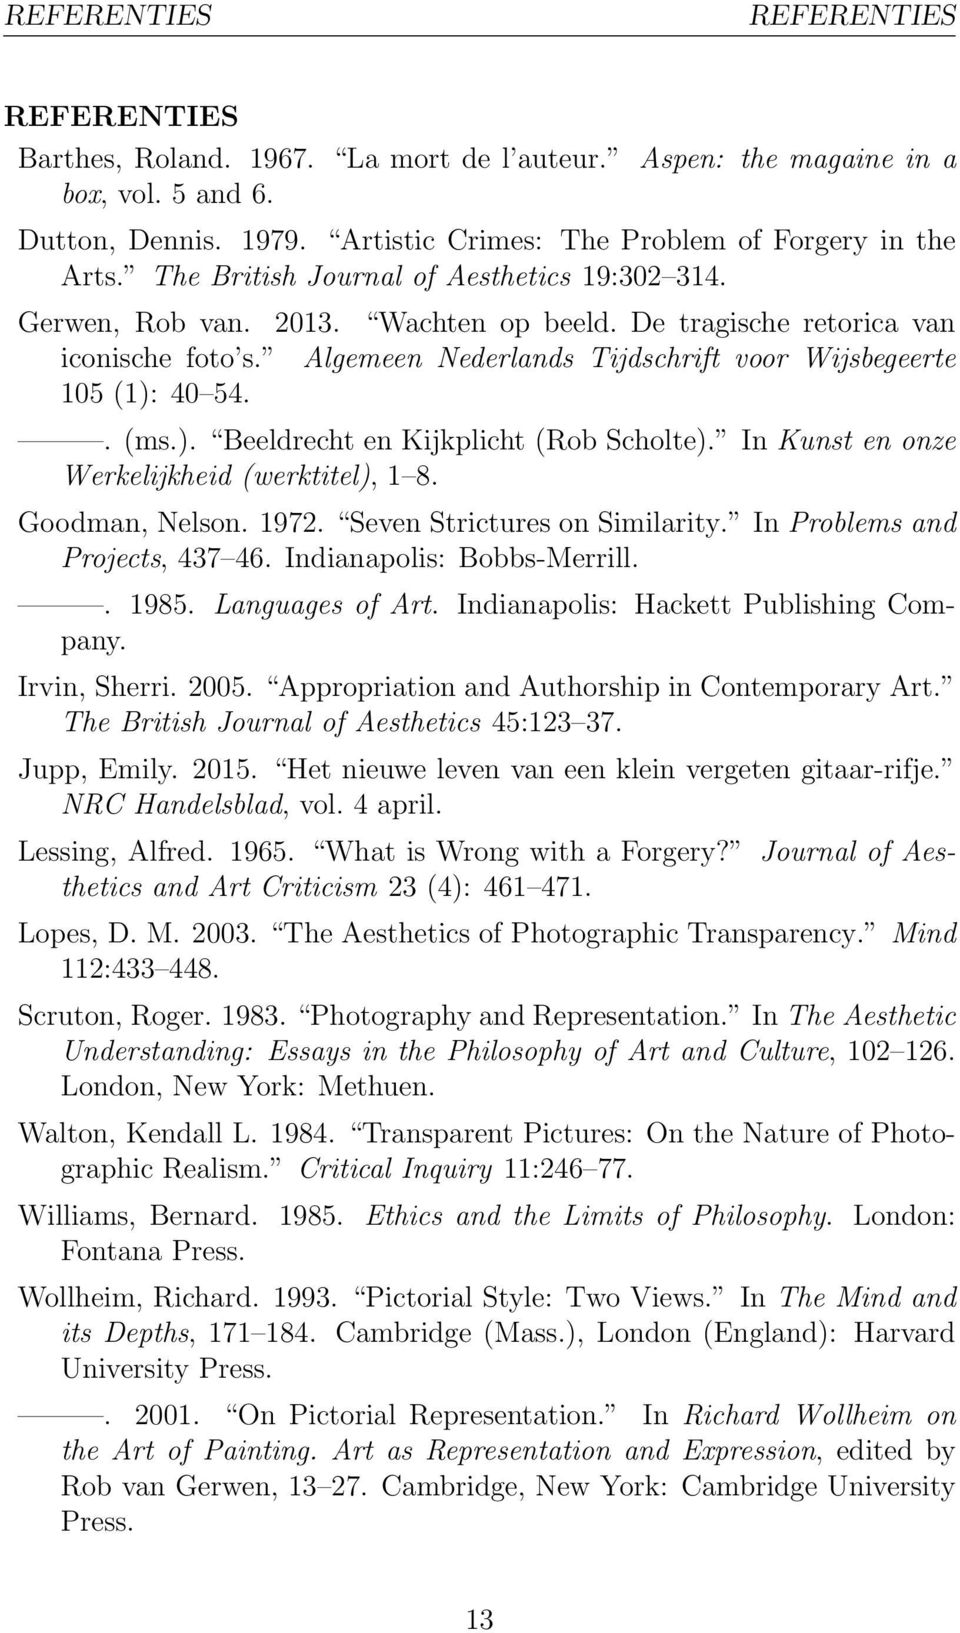 . (ms.). Beeldrecht en Kijkplicht (Rob Scholte). In Kunst en onze Werkelijkheid (werktitel), 1 8. Goodman, Nelson. 1972. Seven Strictures on Similarity. In Problems and Projects, 437 46.